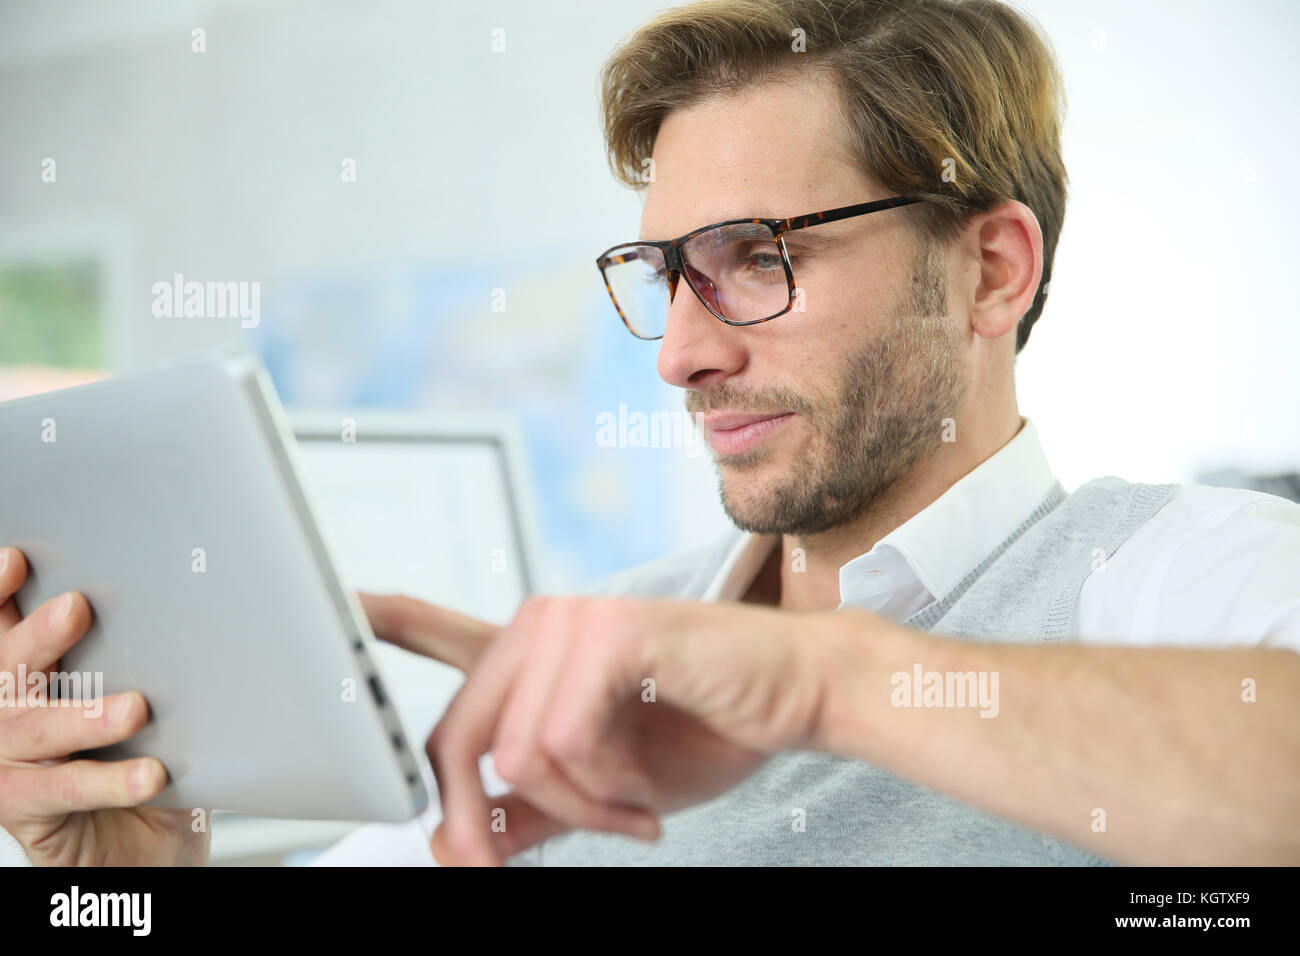 Man in office working on digital tablet, wearing eyeglasses Stock Photo